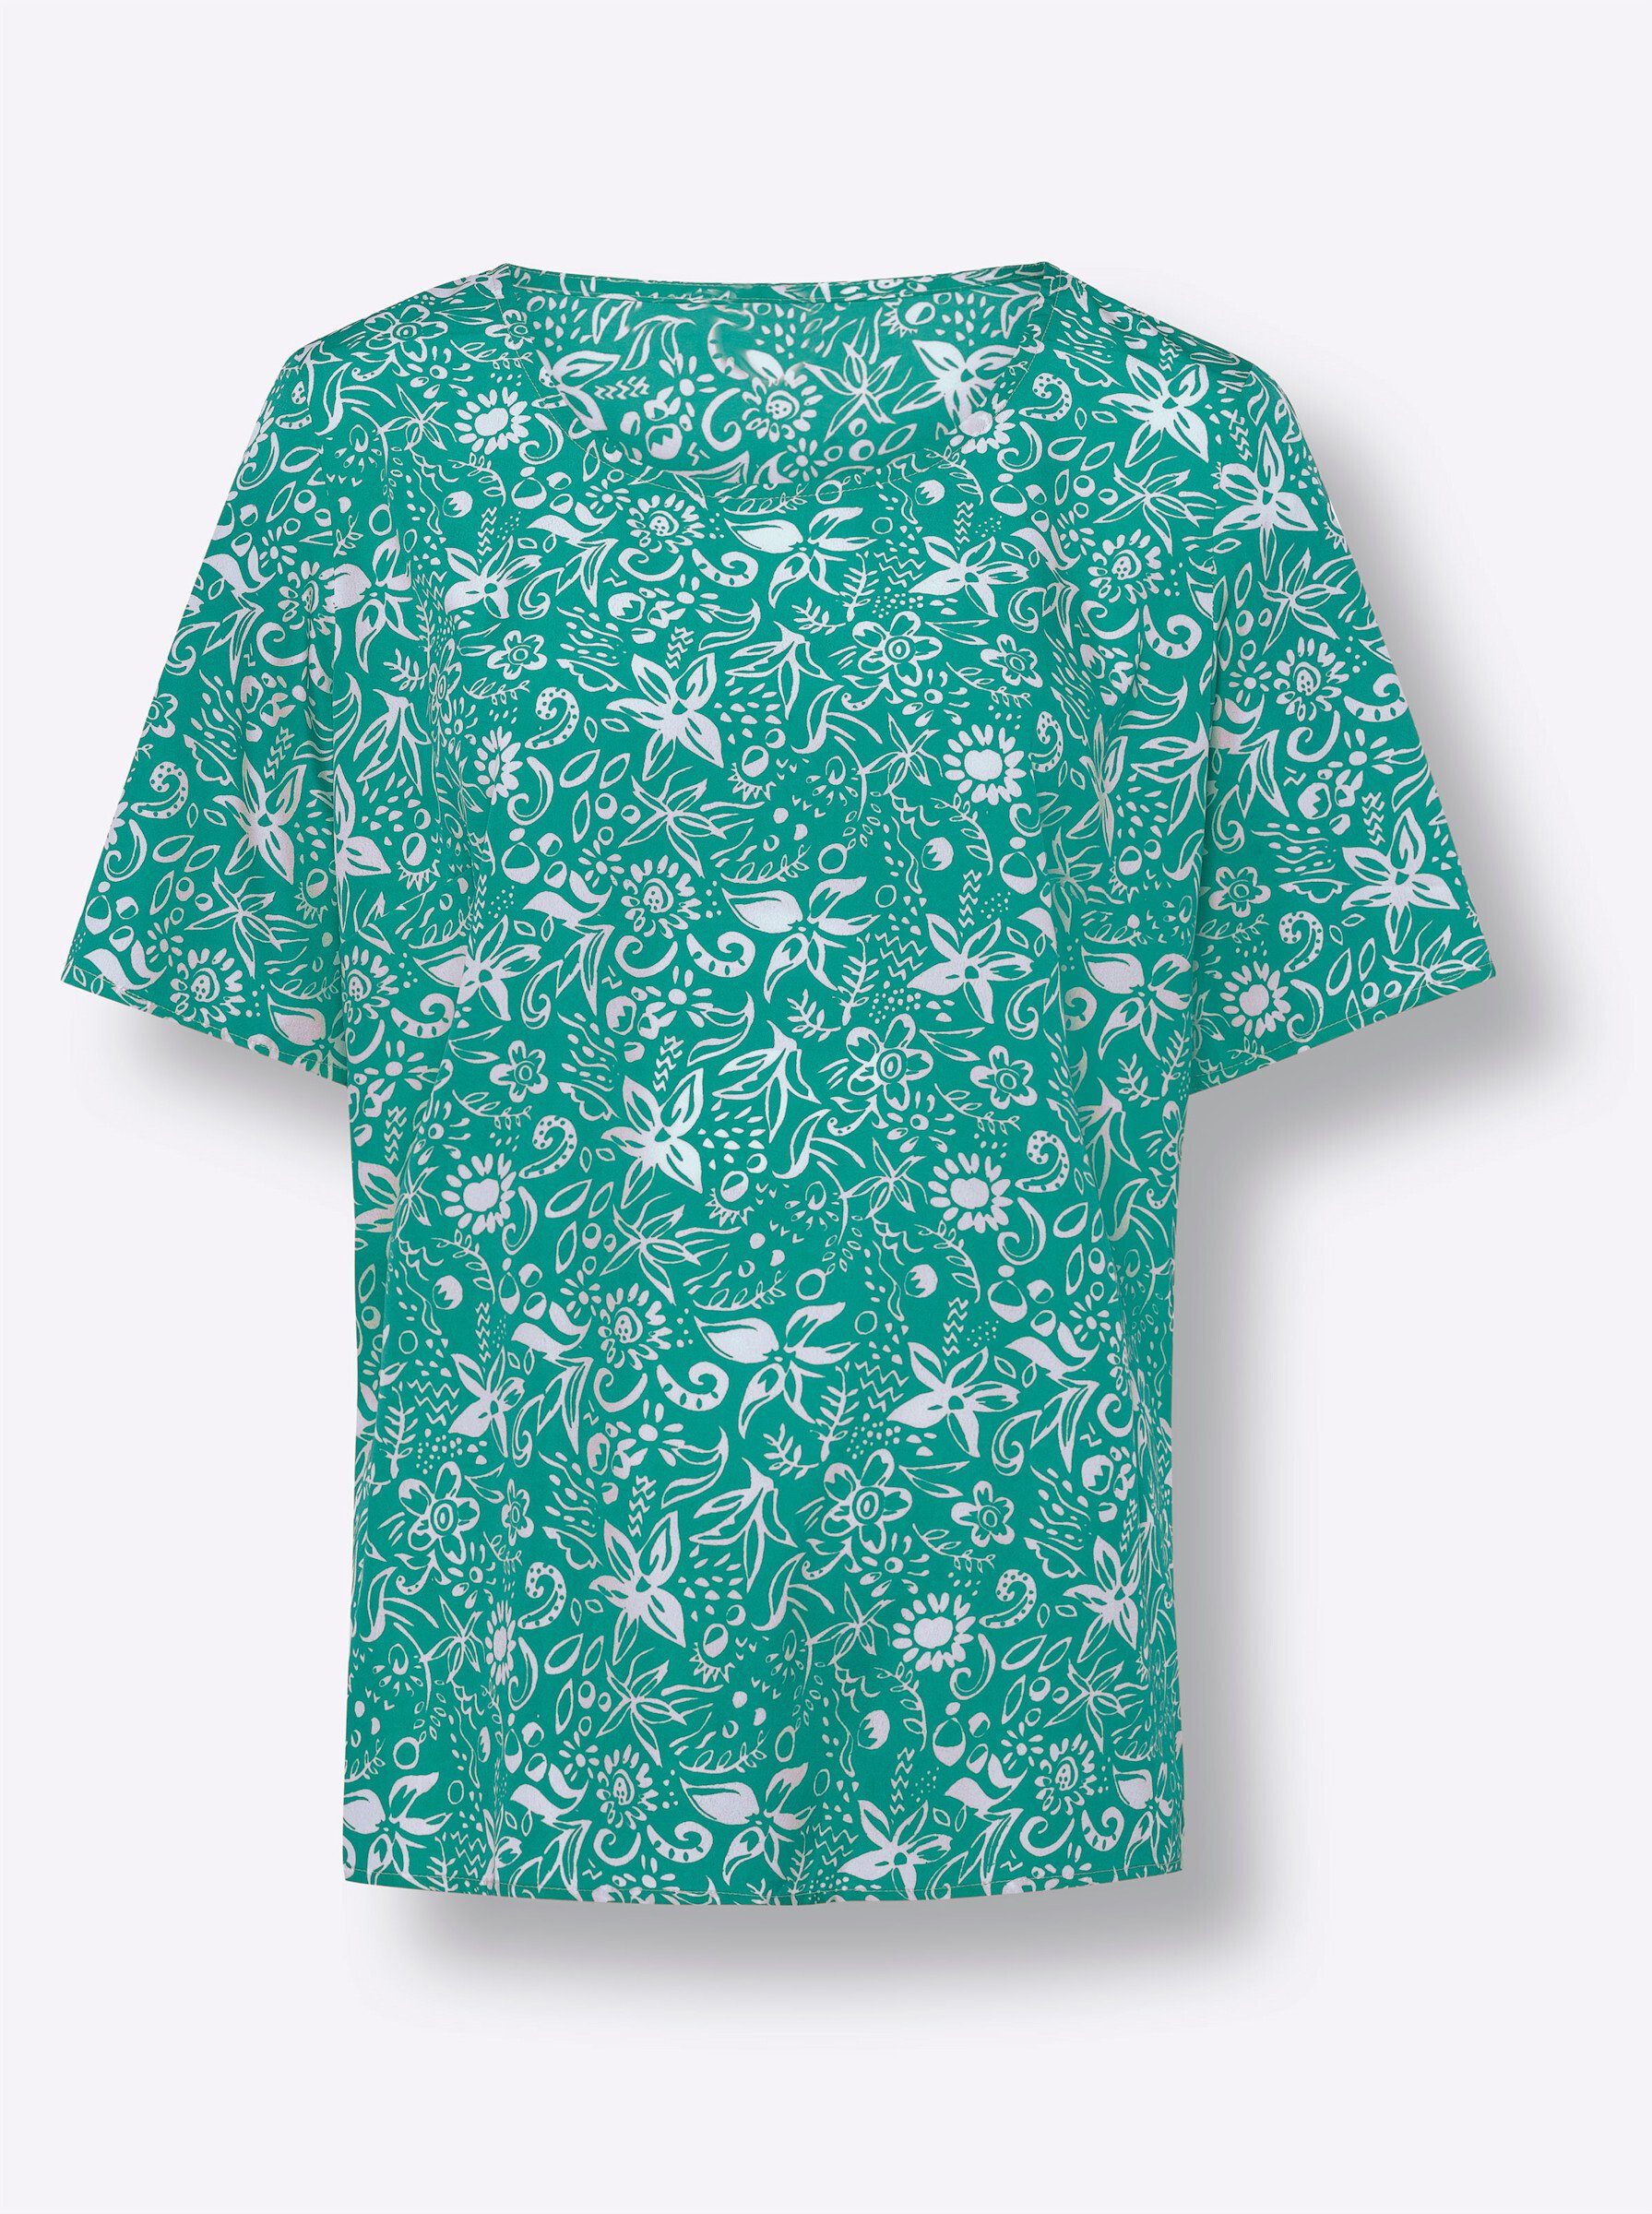 Sieh an! Klassische Bluse smaragd-ecru-bedruckt